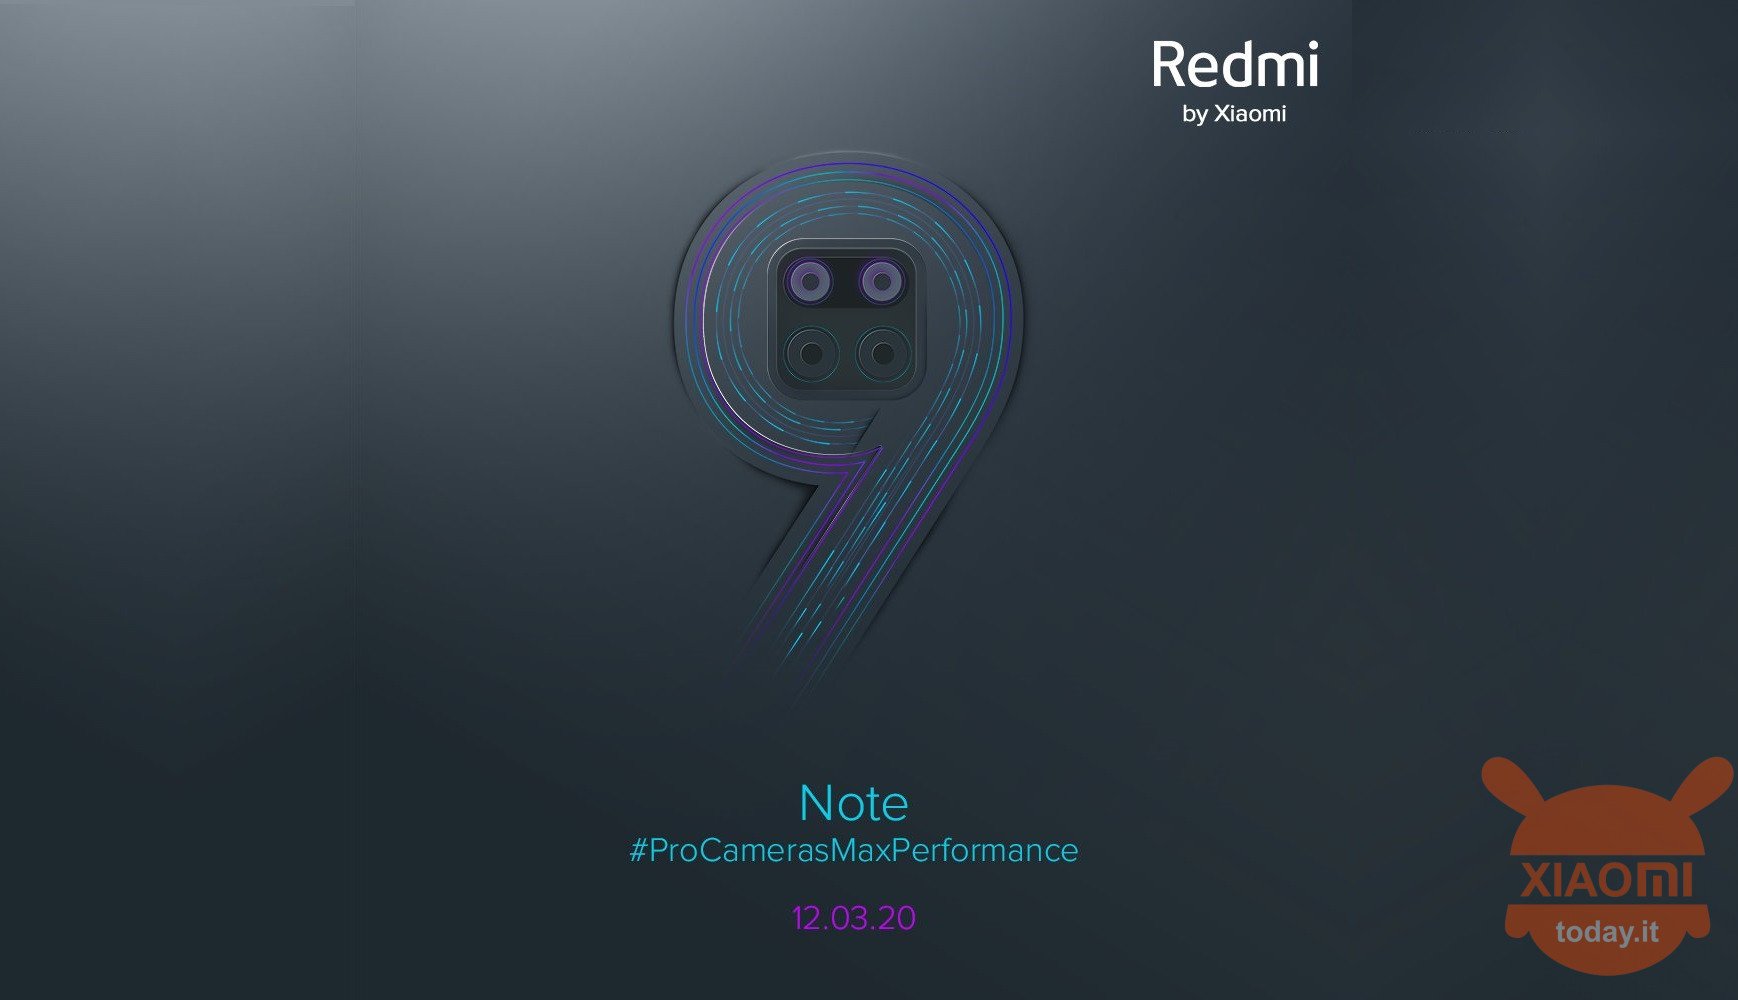 Kommer Redmi Note 9 Pro Max i stället för Xiaomi Mi Max 4?